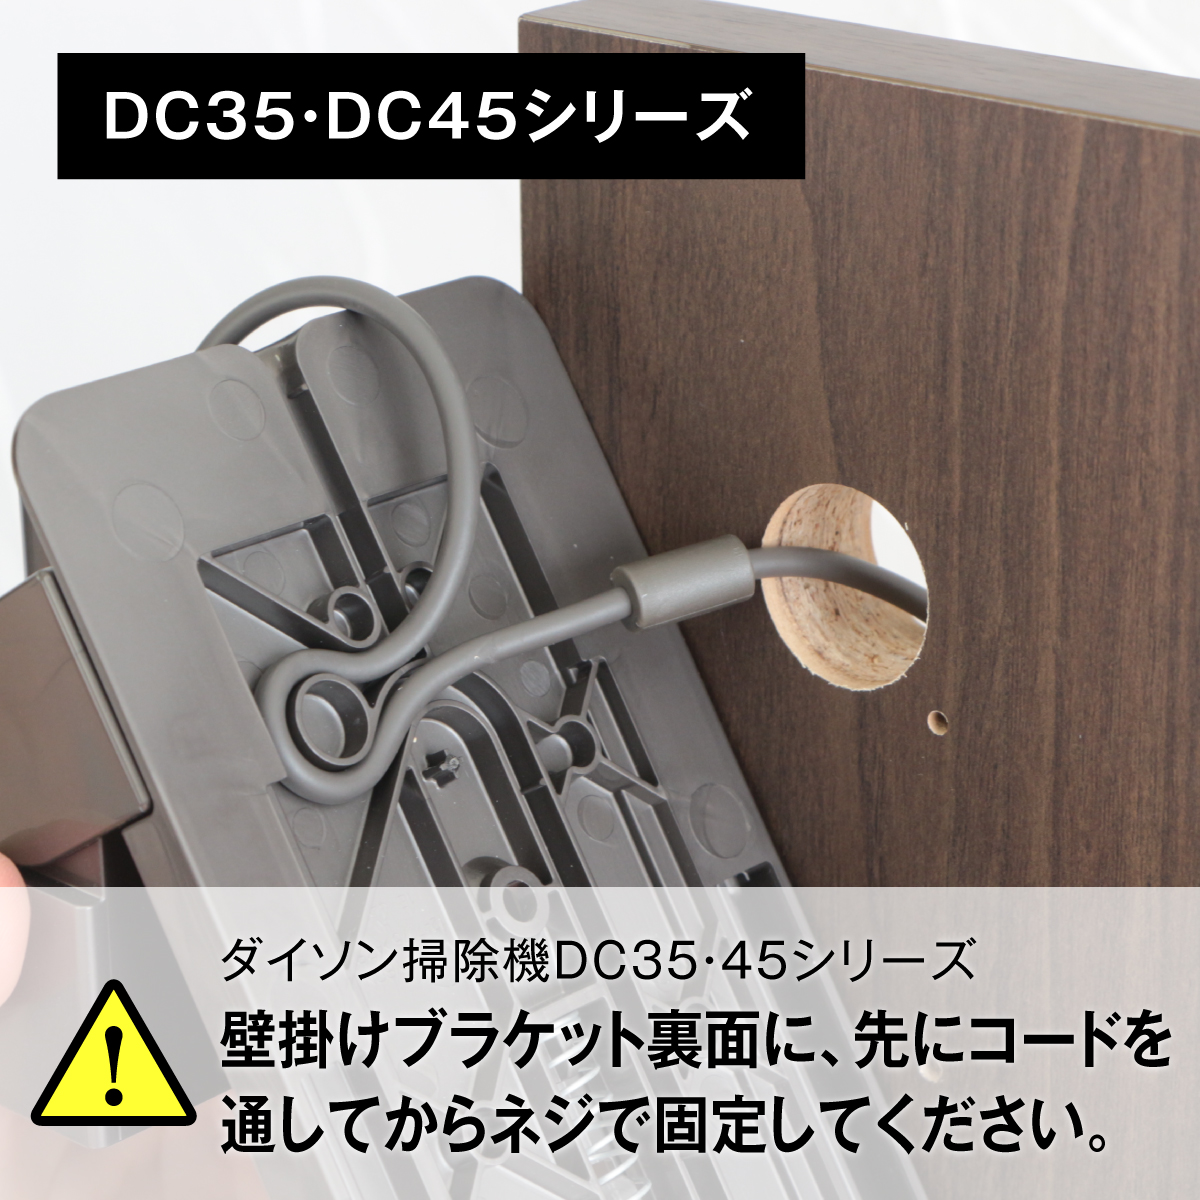 楽天市場 送料無料 ダイソン コードレスクリーナー 壁寄せ 充電スタンド付属品収納モデル 日本製 Dyson Micro Digital Slim V11 V10 V8 V7 V6 Dc74 Dc62 Dc45 Dc35対応 シアターハウス